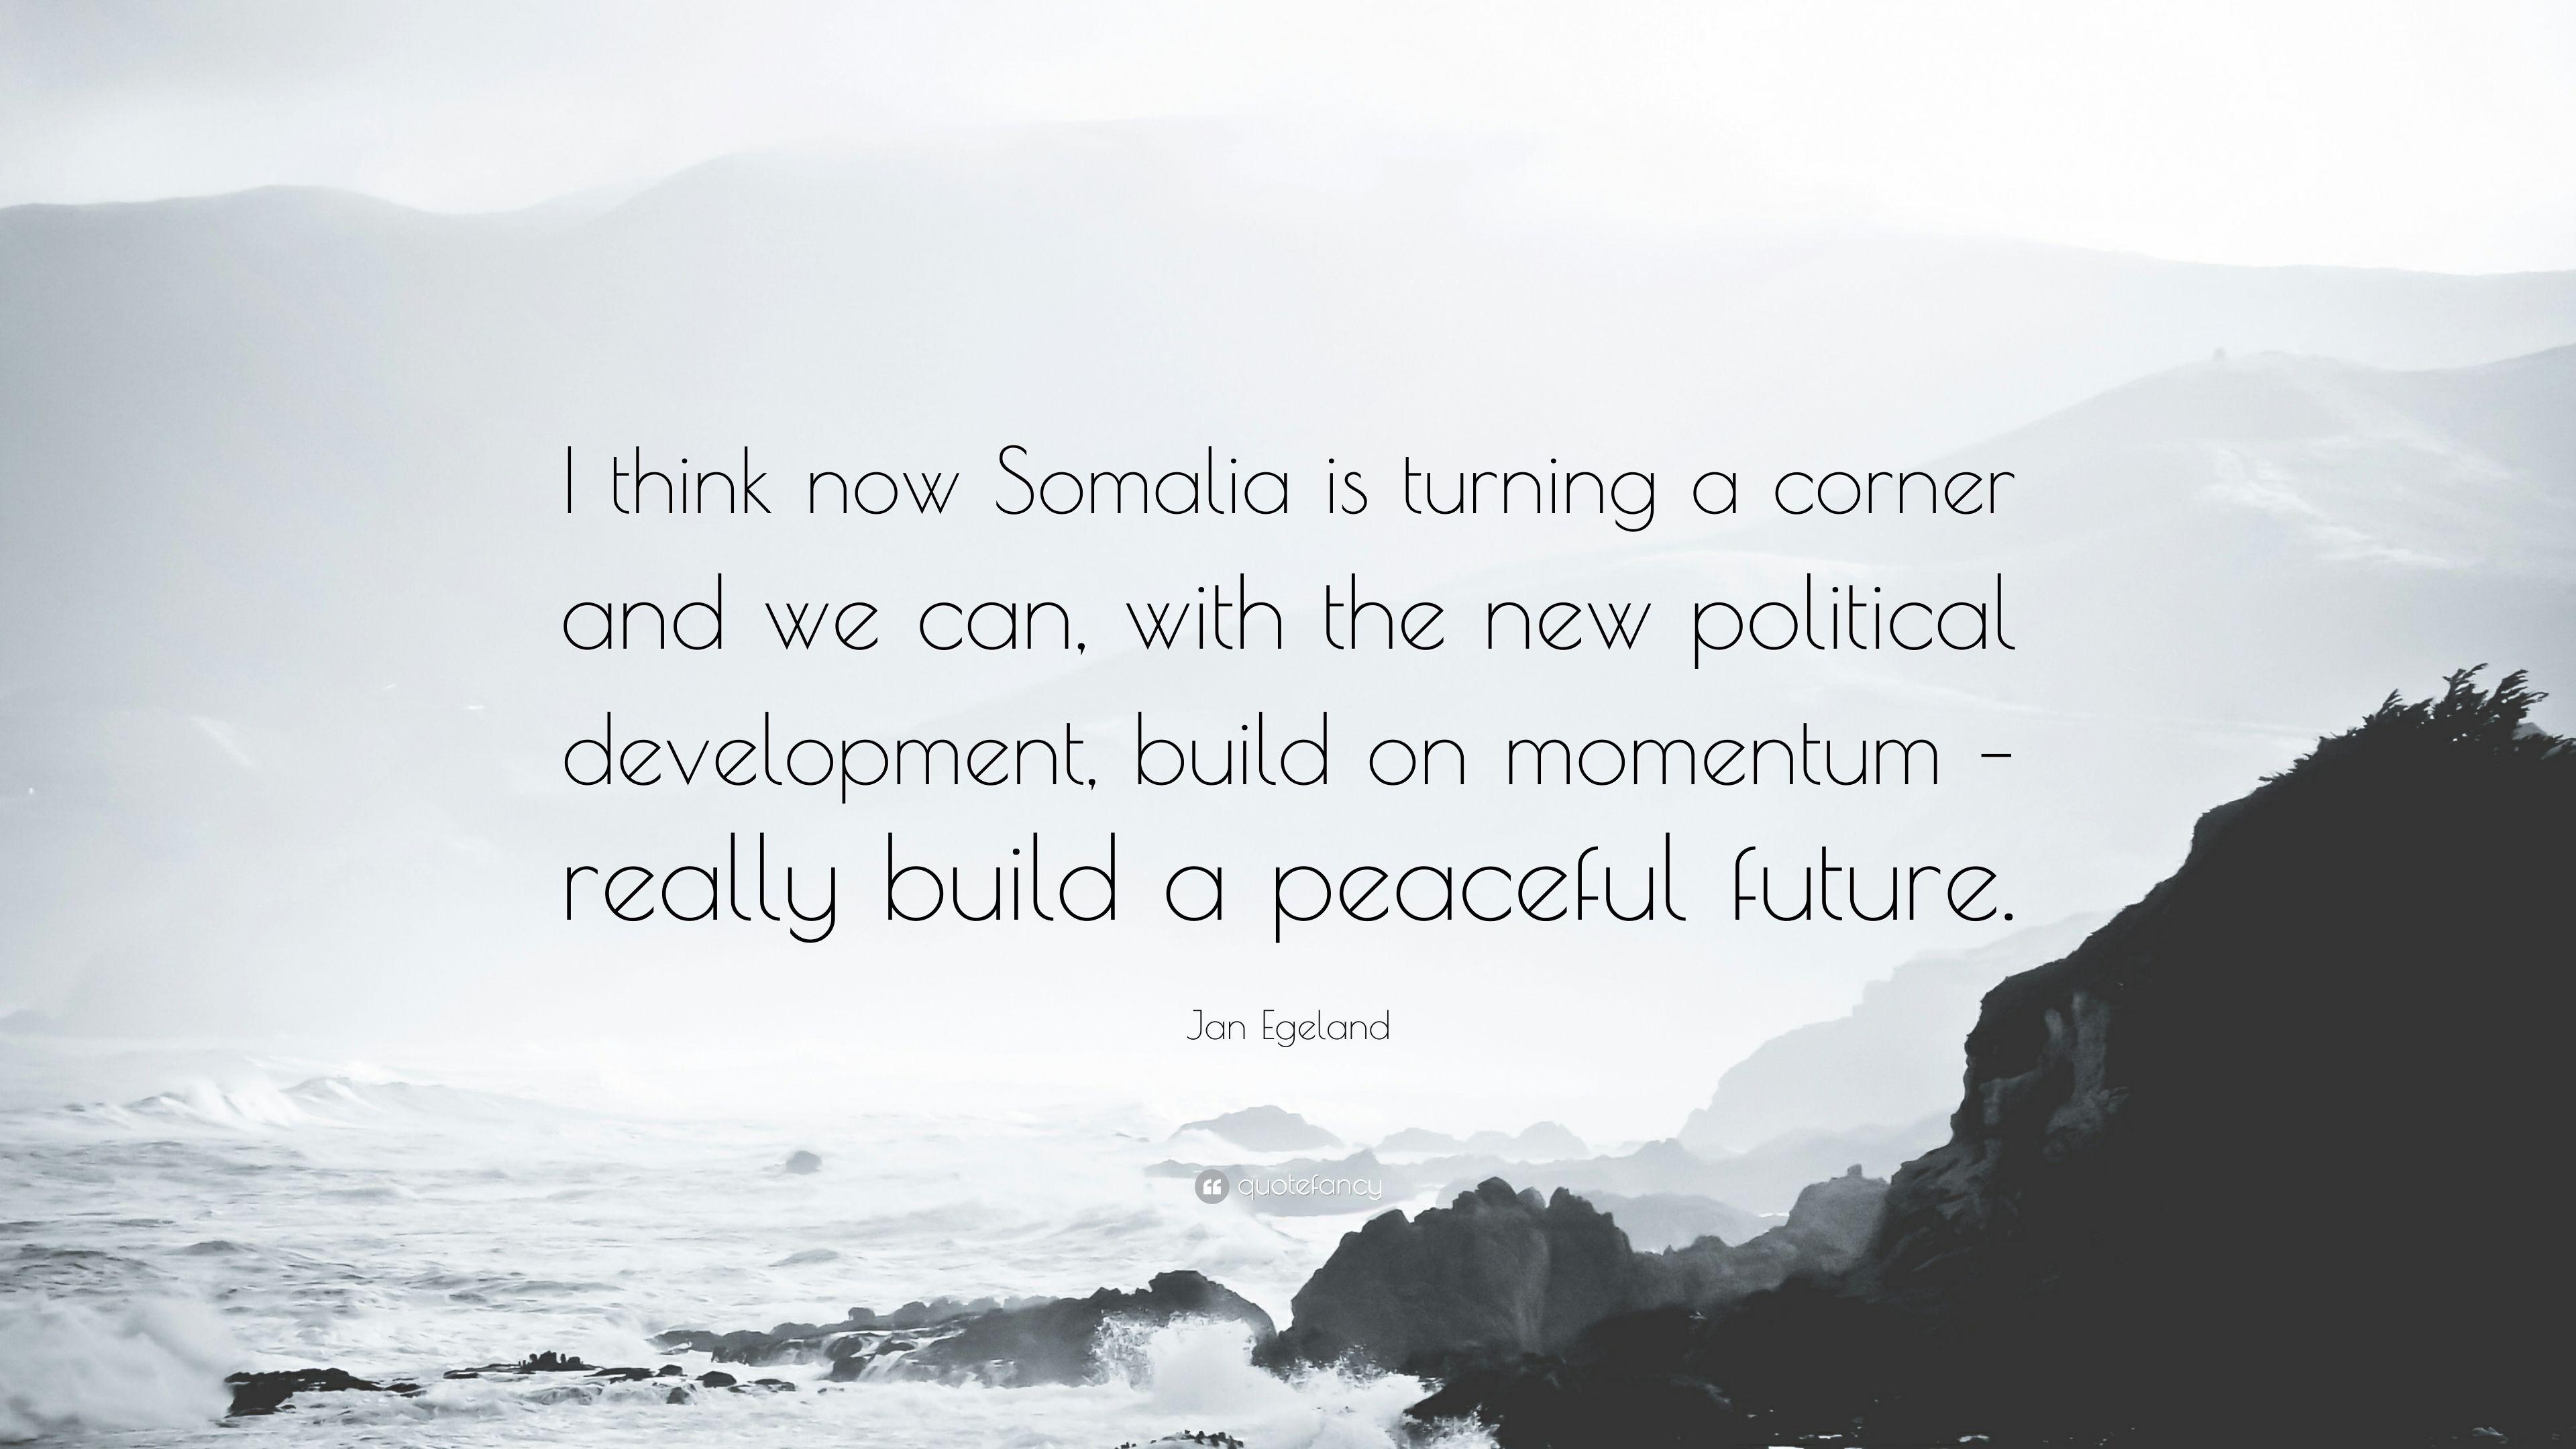 Jan Egeland Quote: “I think now Somalia is turning a corner and we